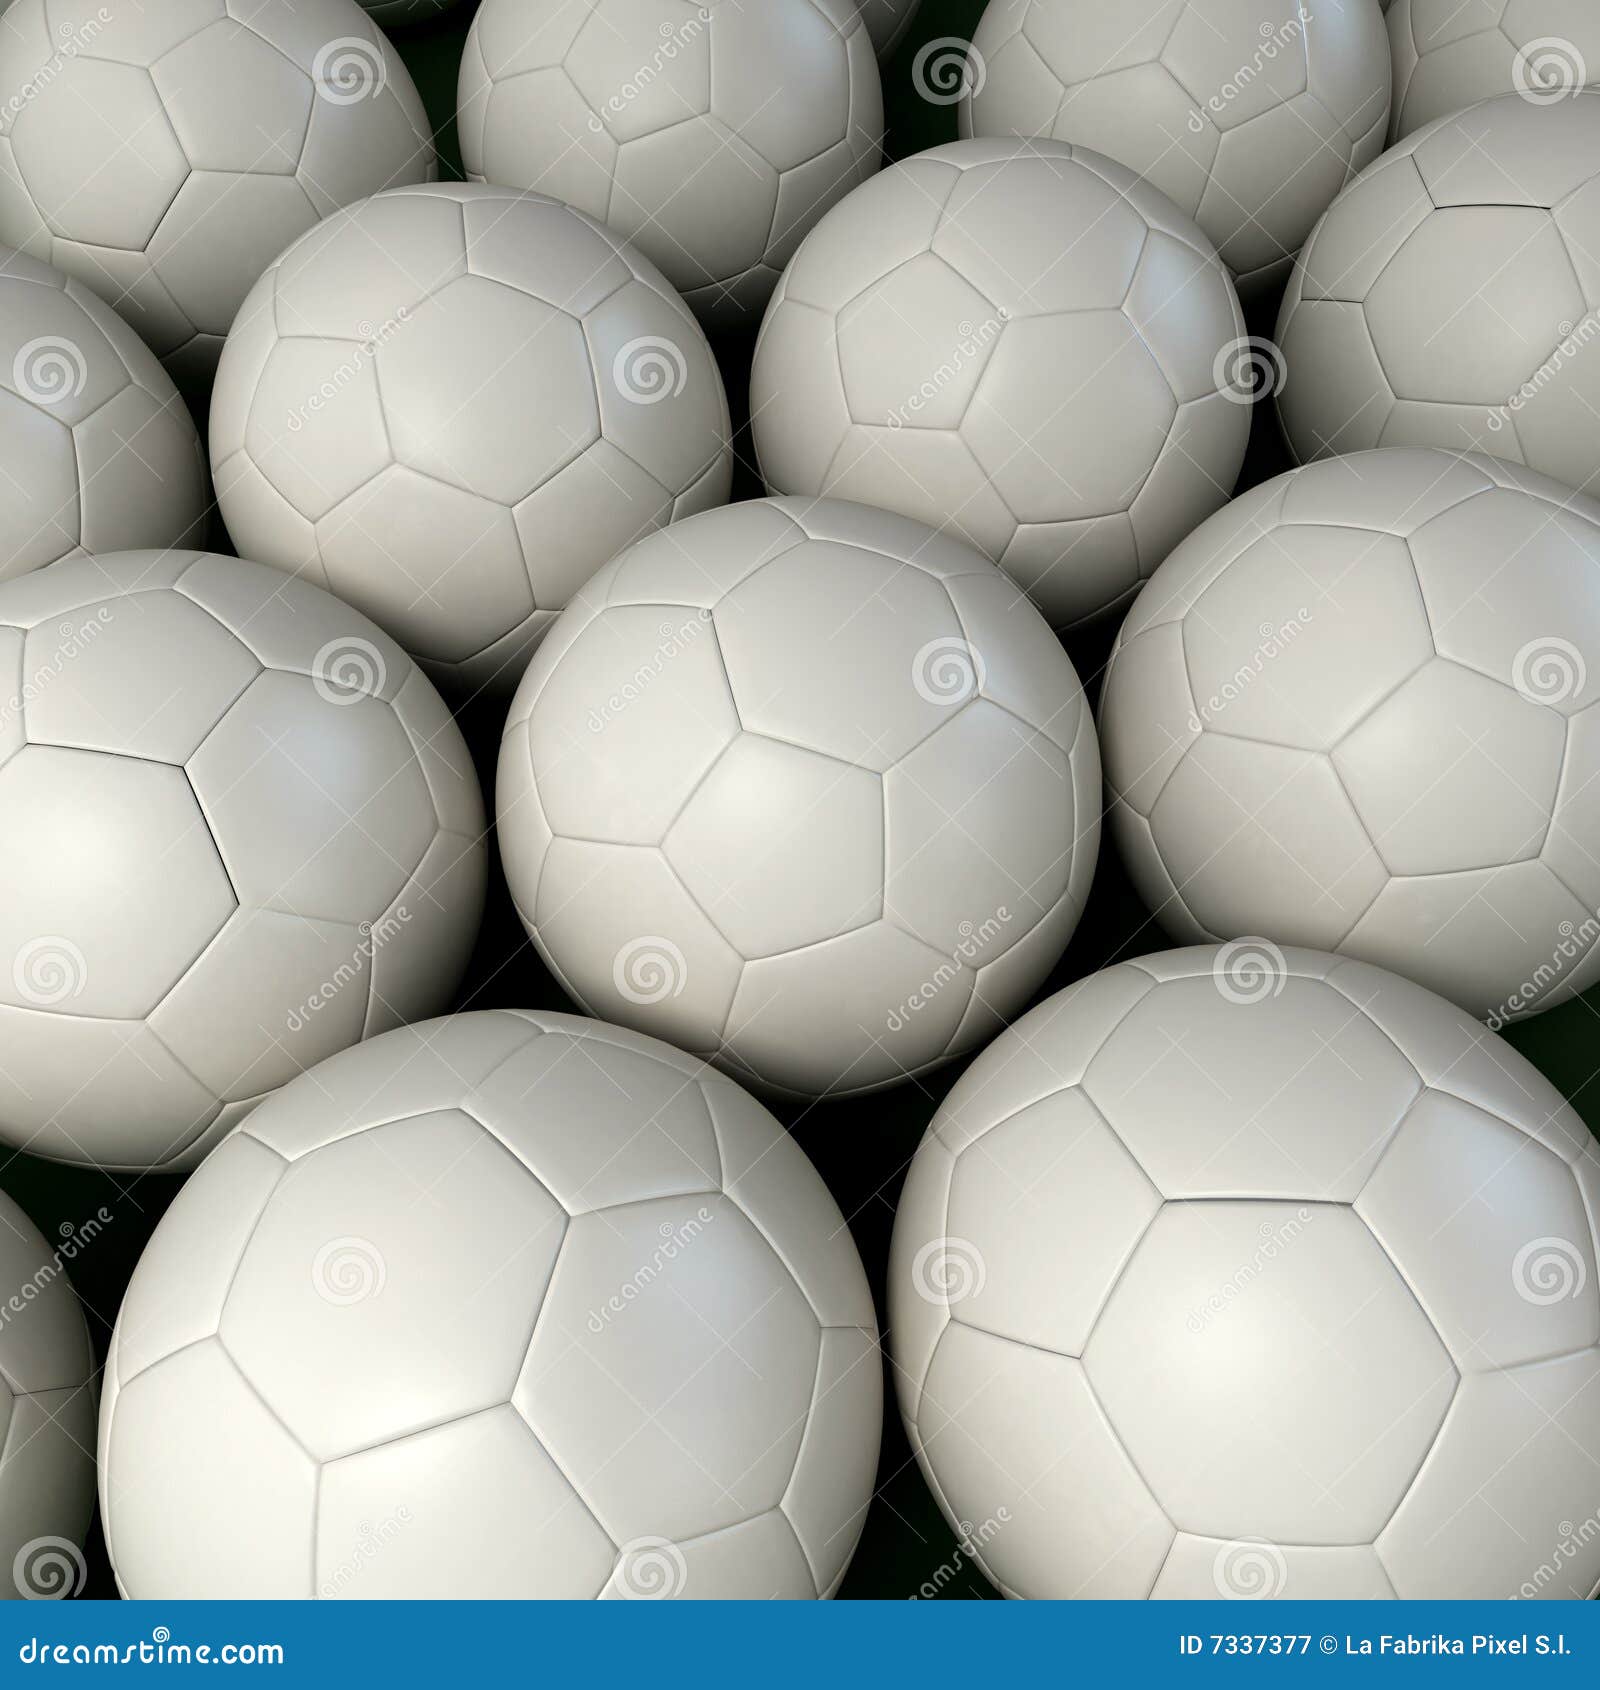 Background of White Soccer Balls Stock Illustration - Illustration of ...